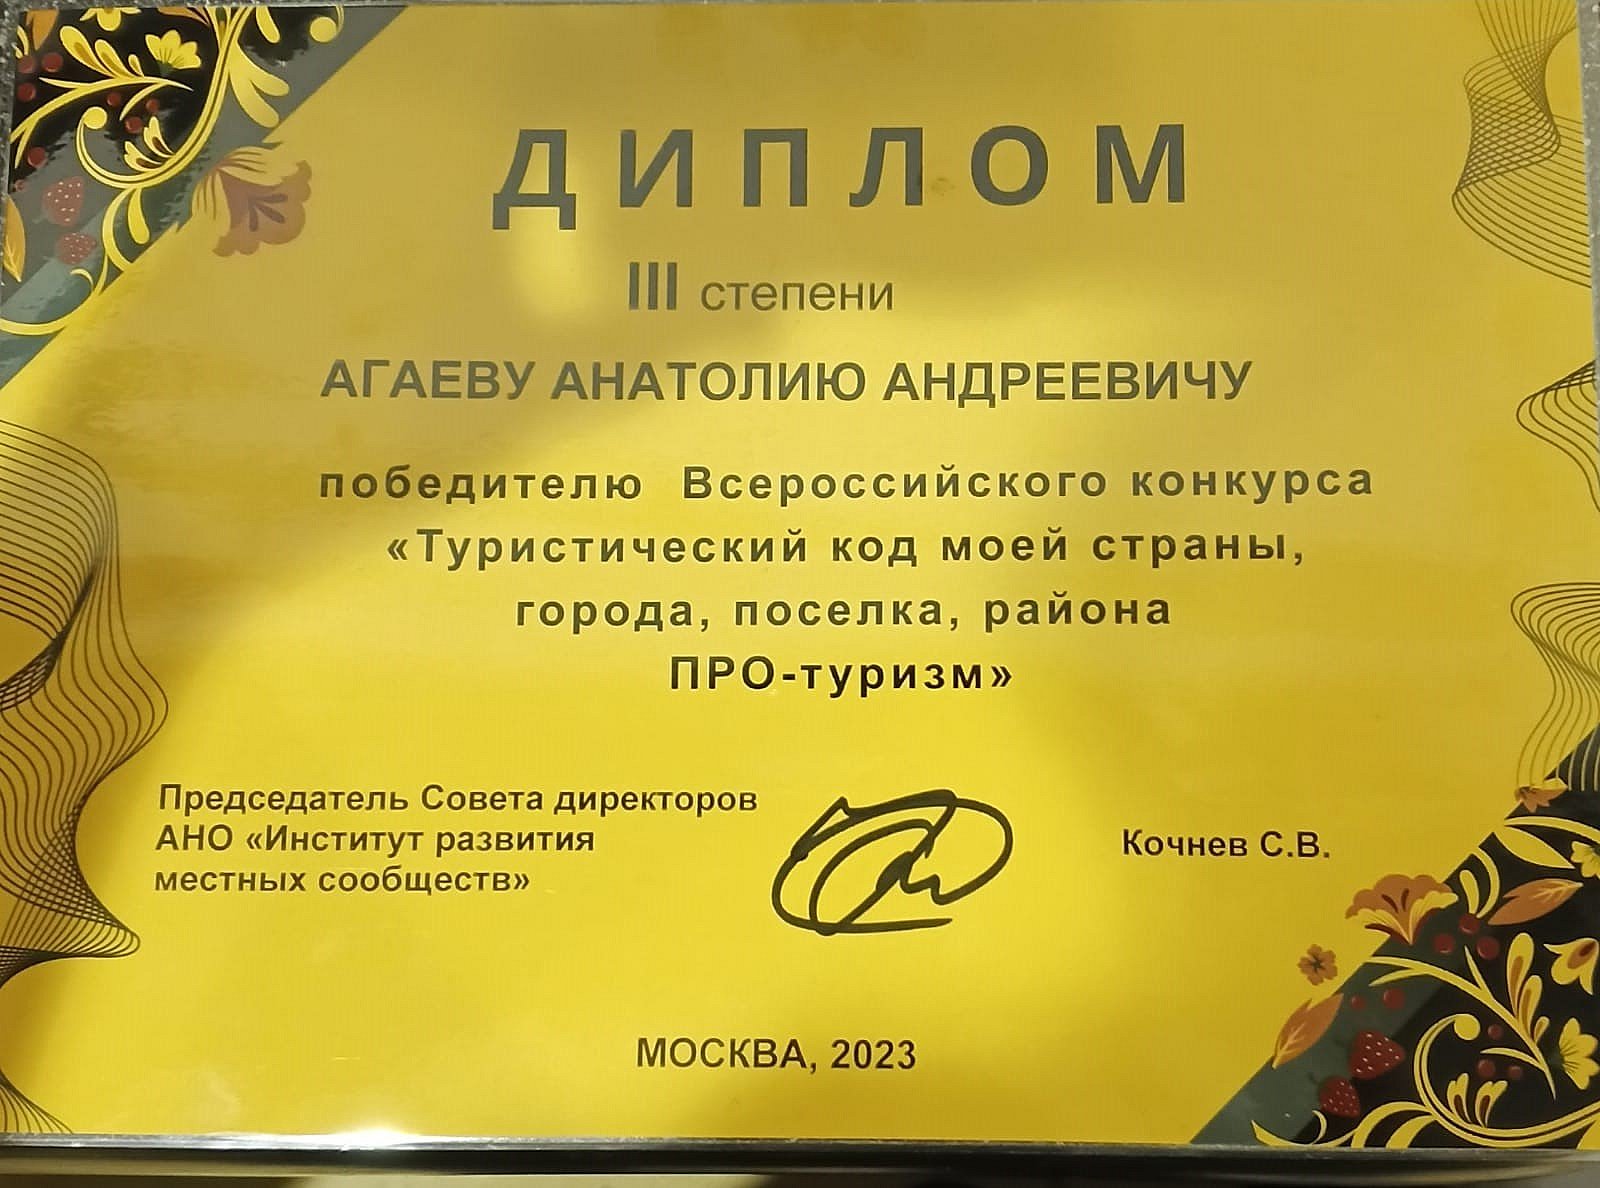 Всероссийский конкурс туристический код моей страны. Презентация к проекту тура на конкурс туристический код моей страны.